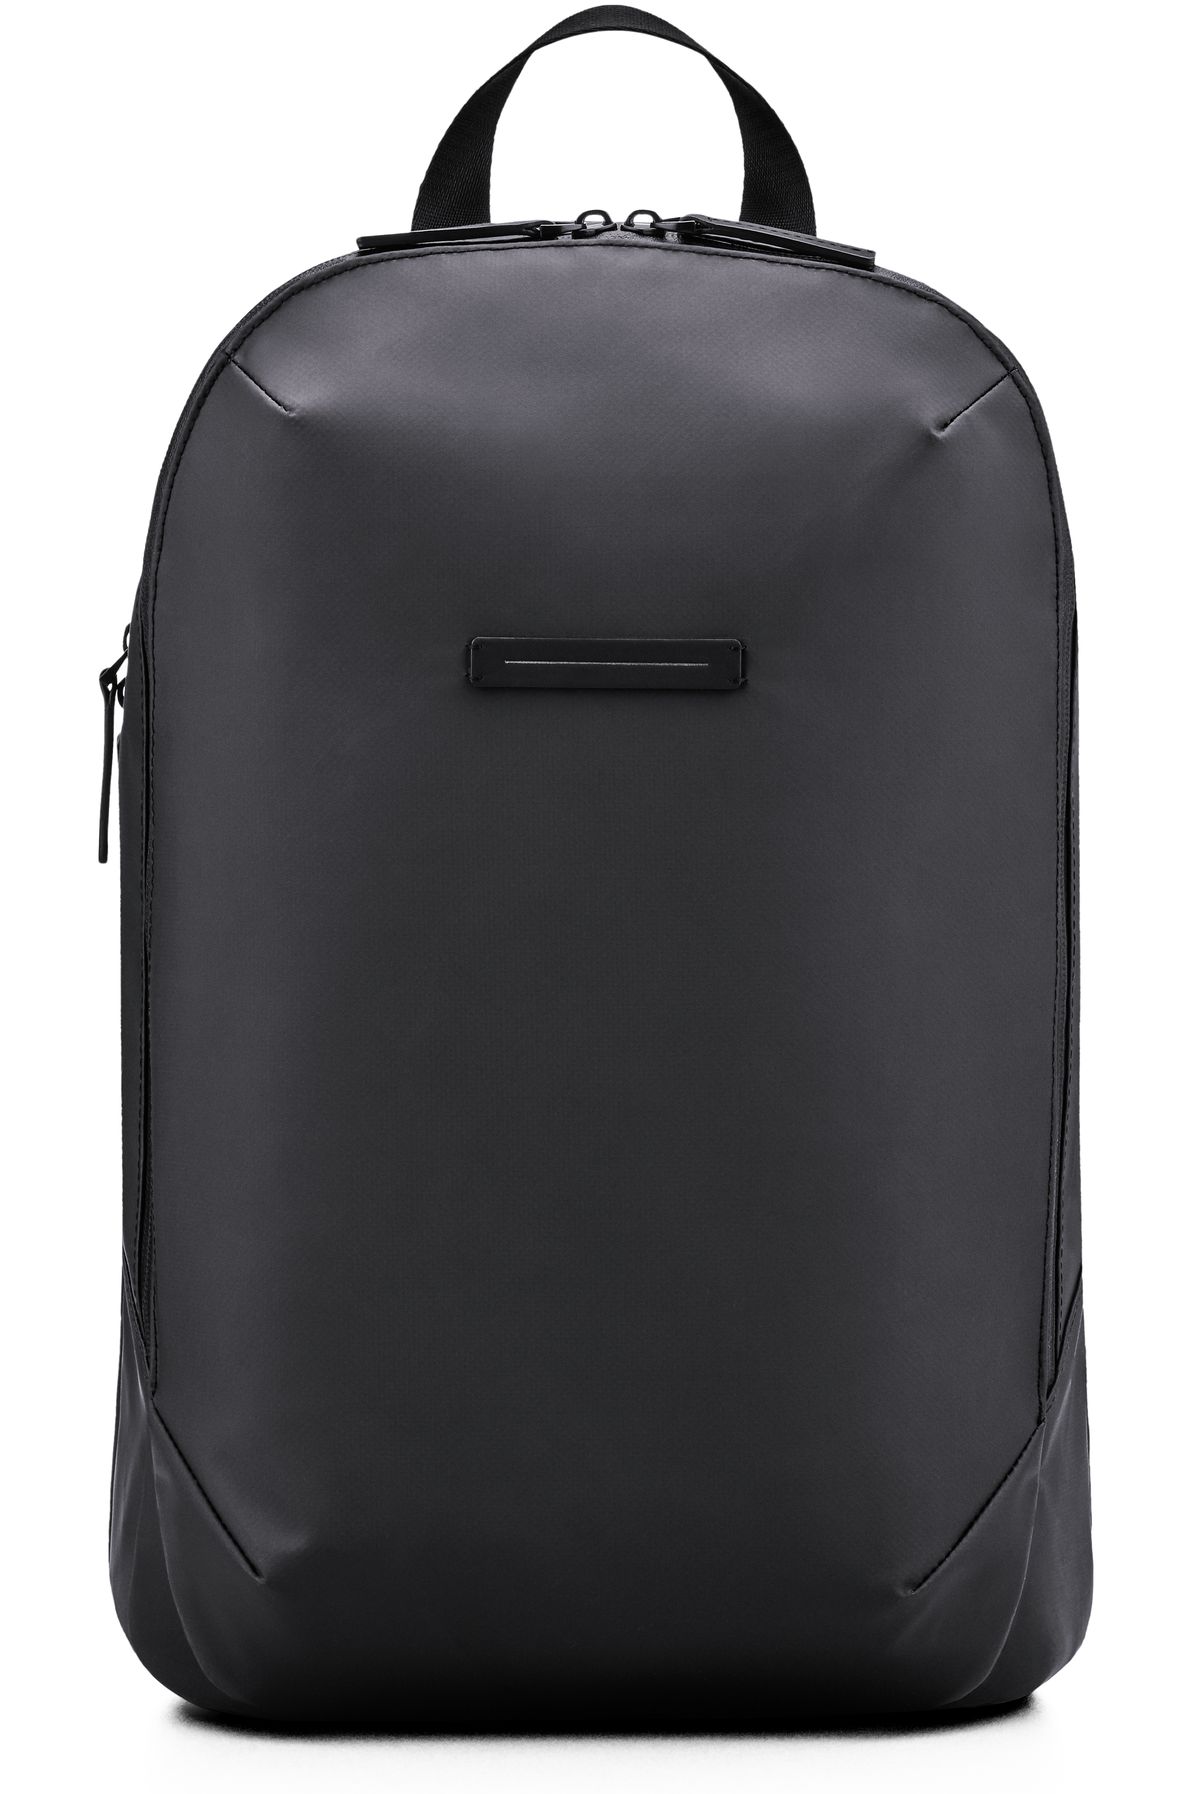 Horizn Studios Gion Pro M backpack